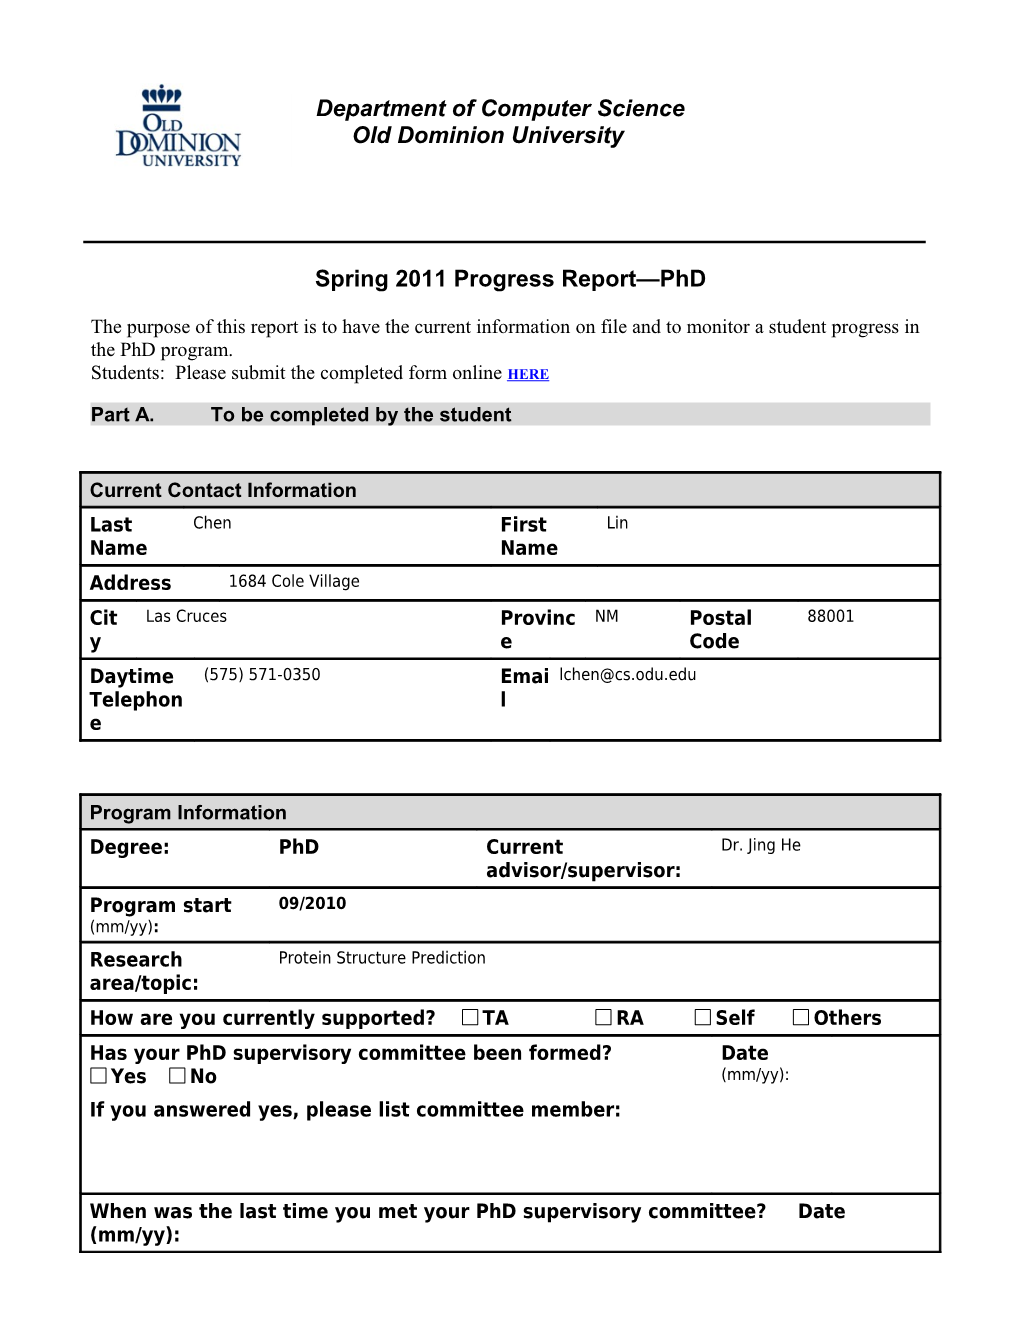 Phd Progress Form - ODU CS